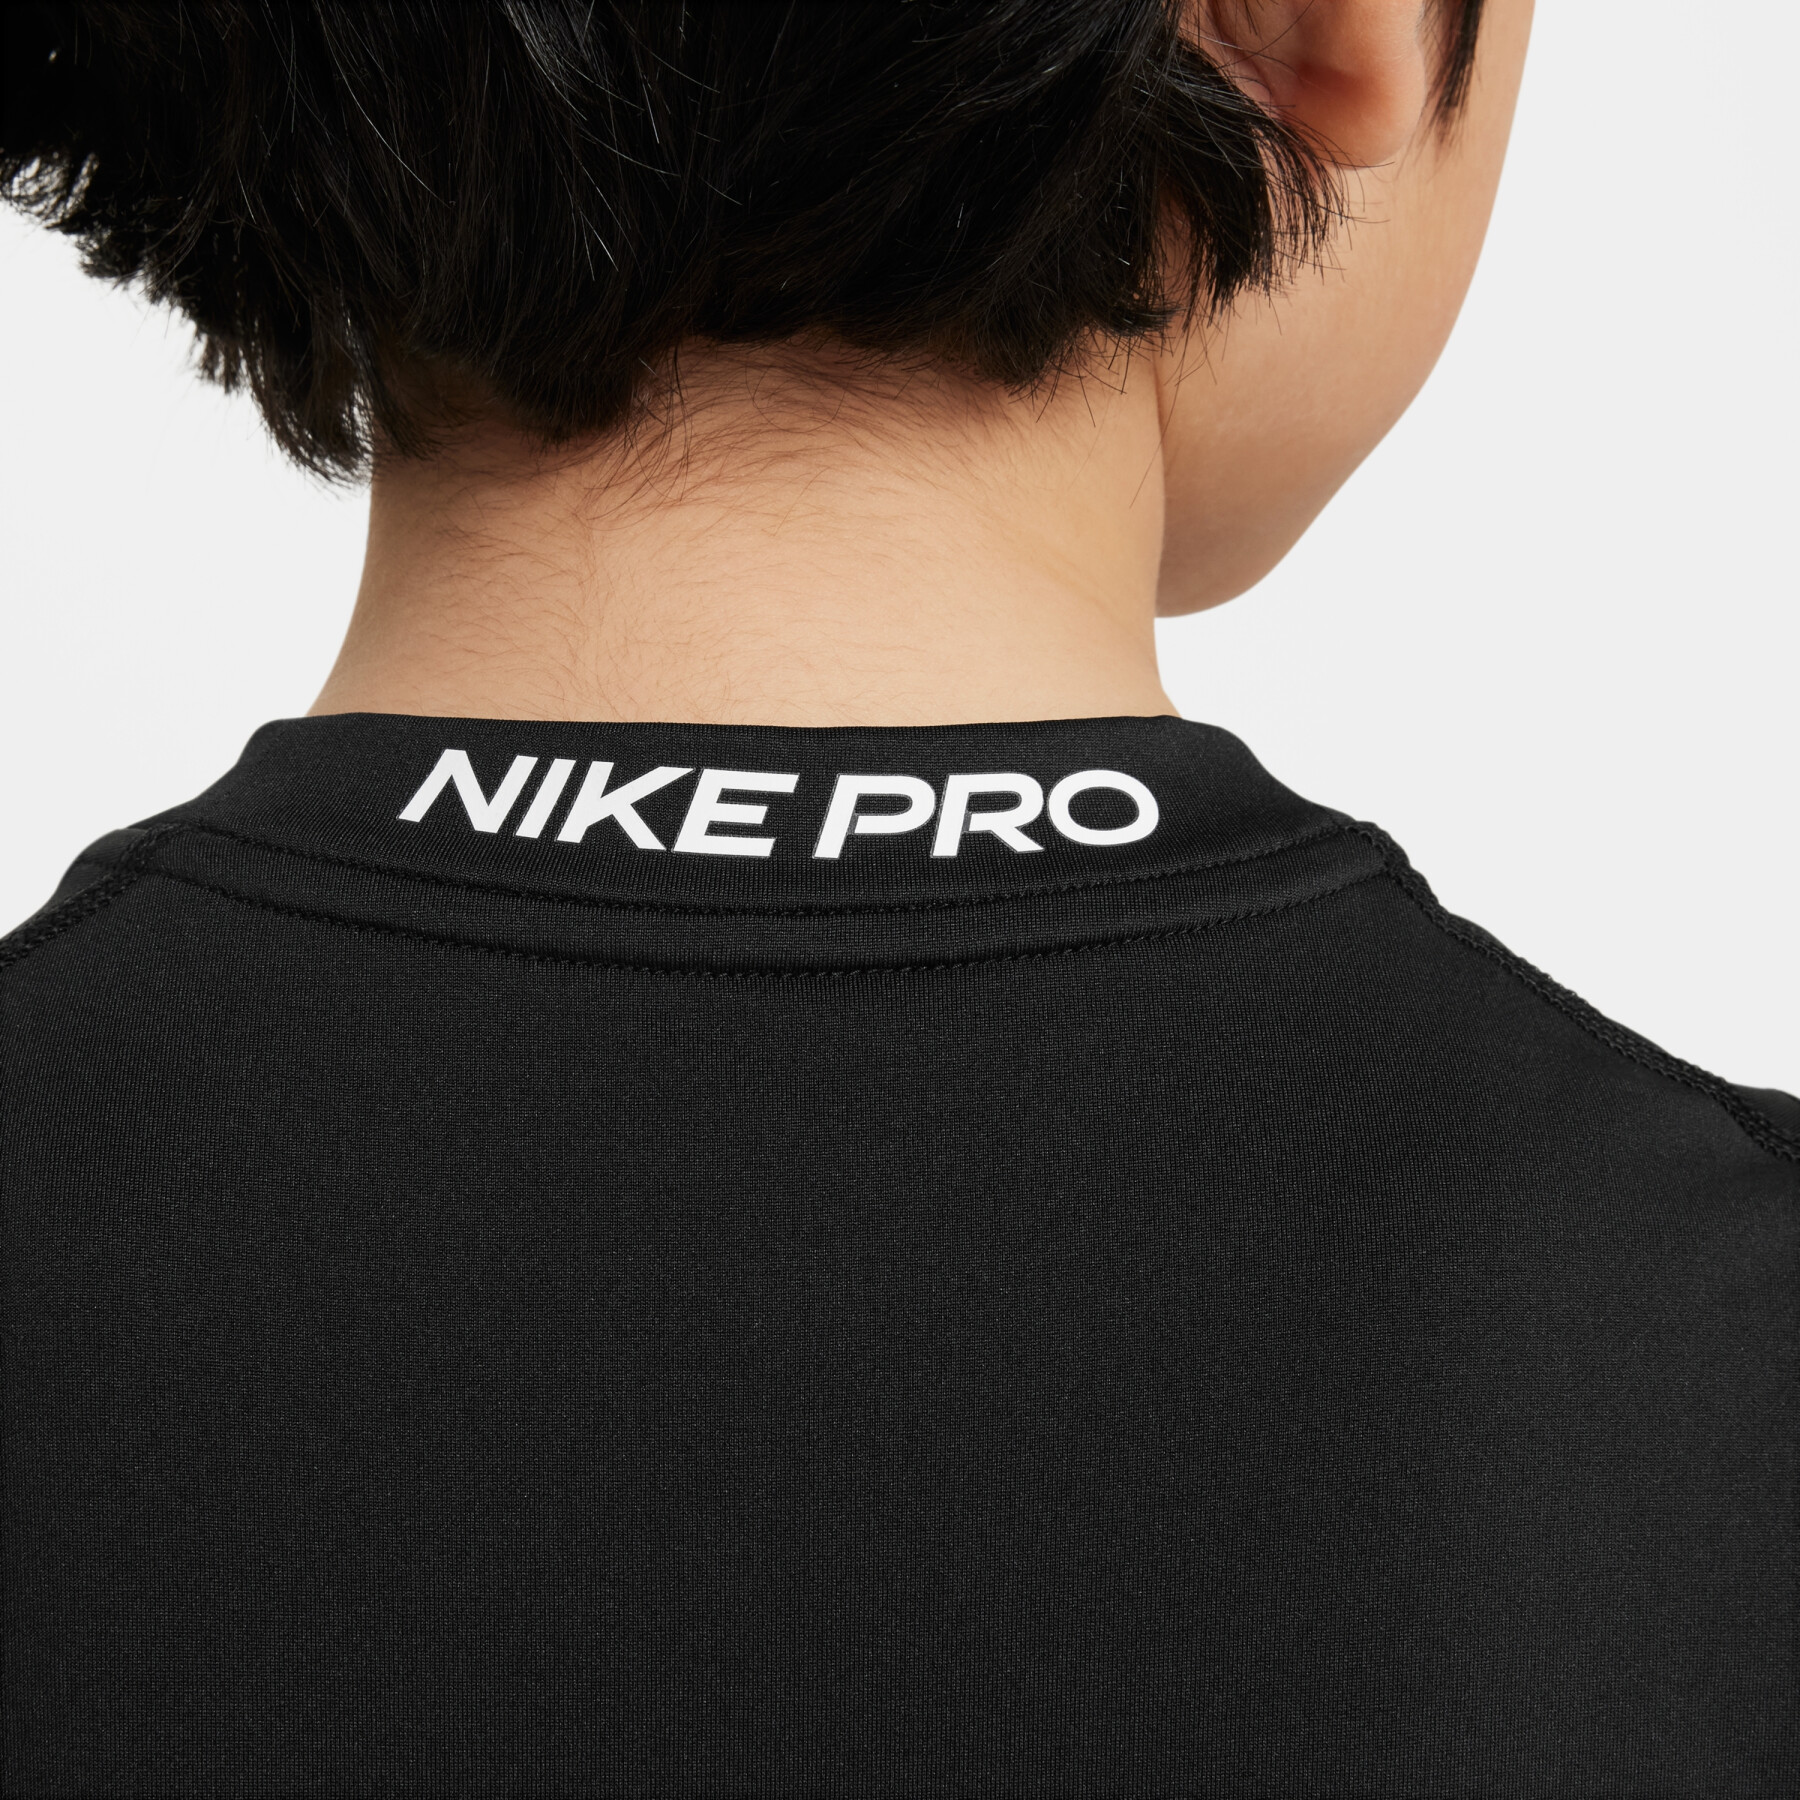 Kinder-Top Nike Pro